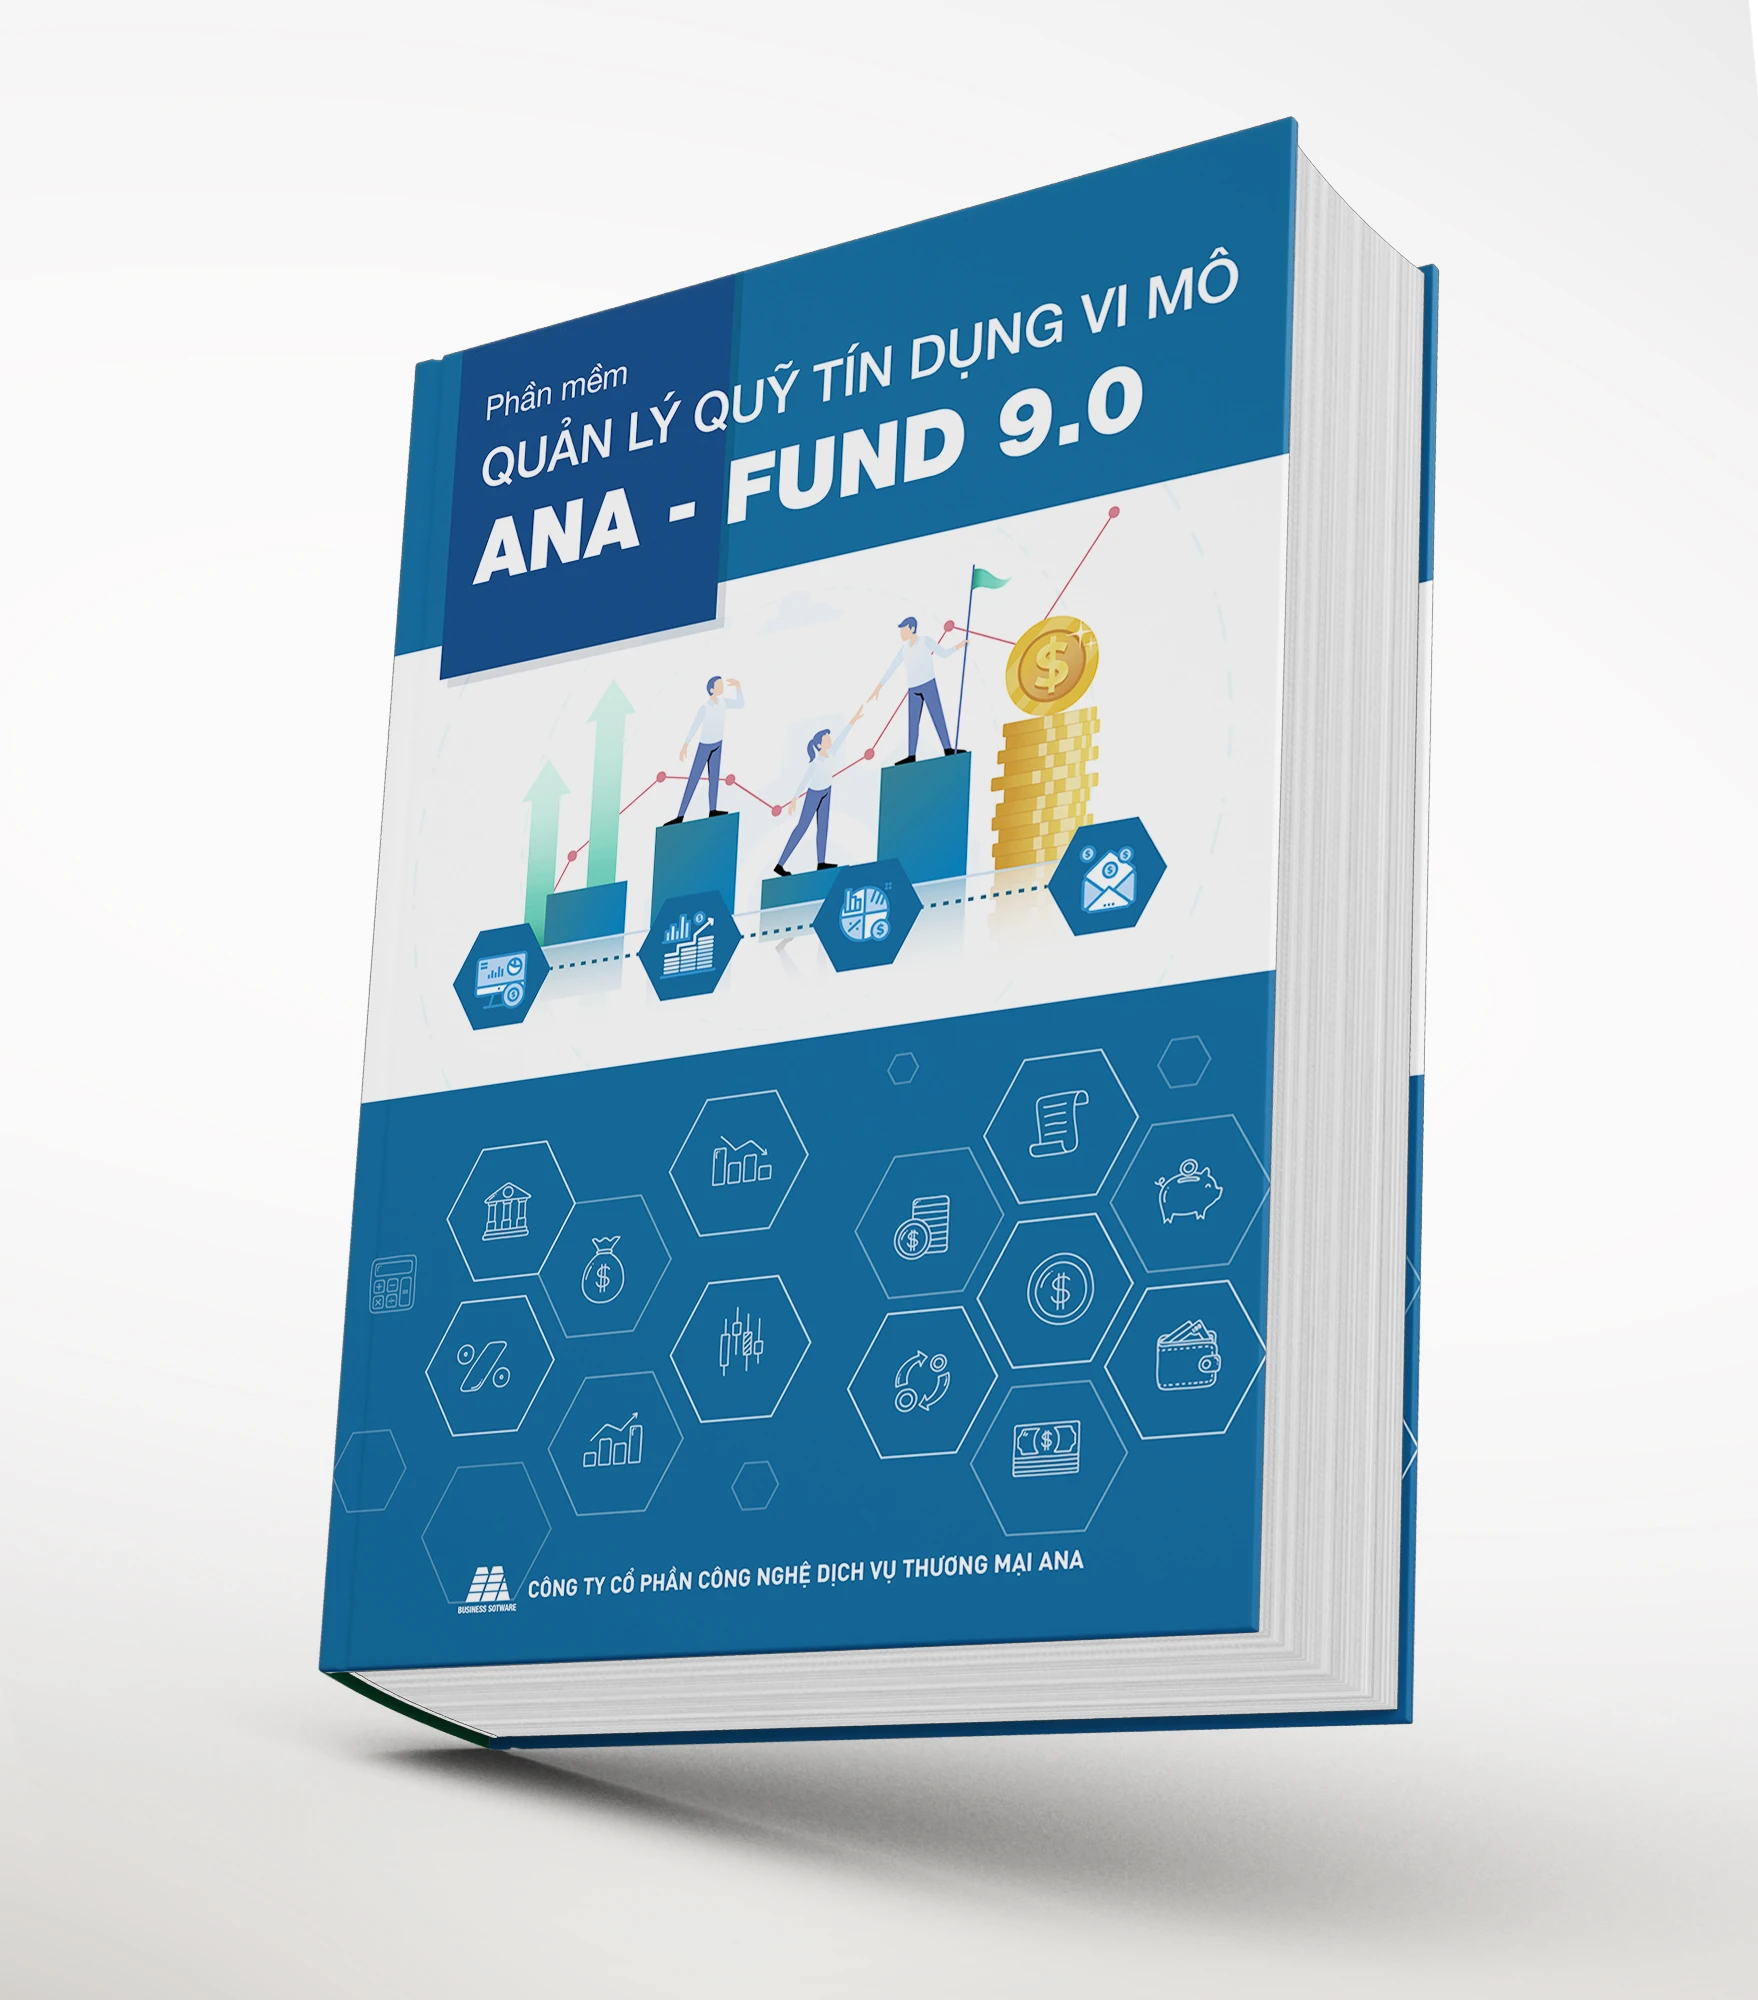 Phần mềm quản lý Quỹ tín dụng Vi mô ANA - FUND 9.0